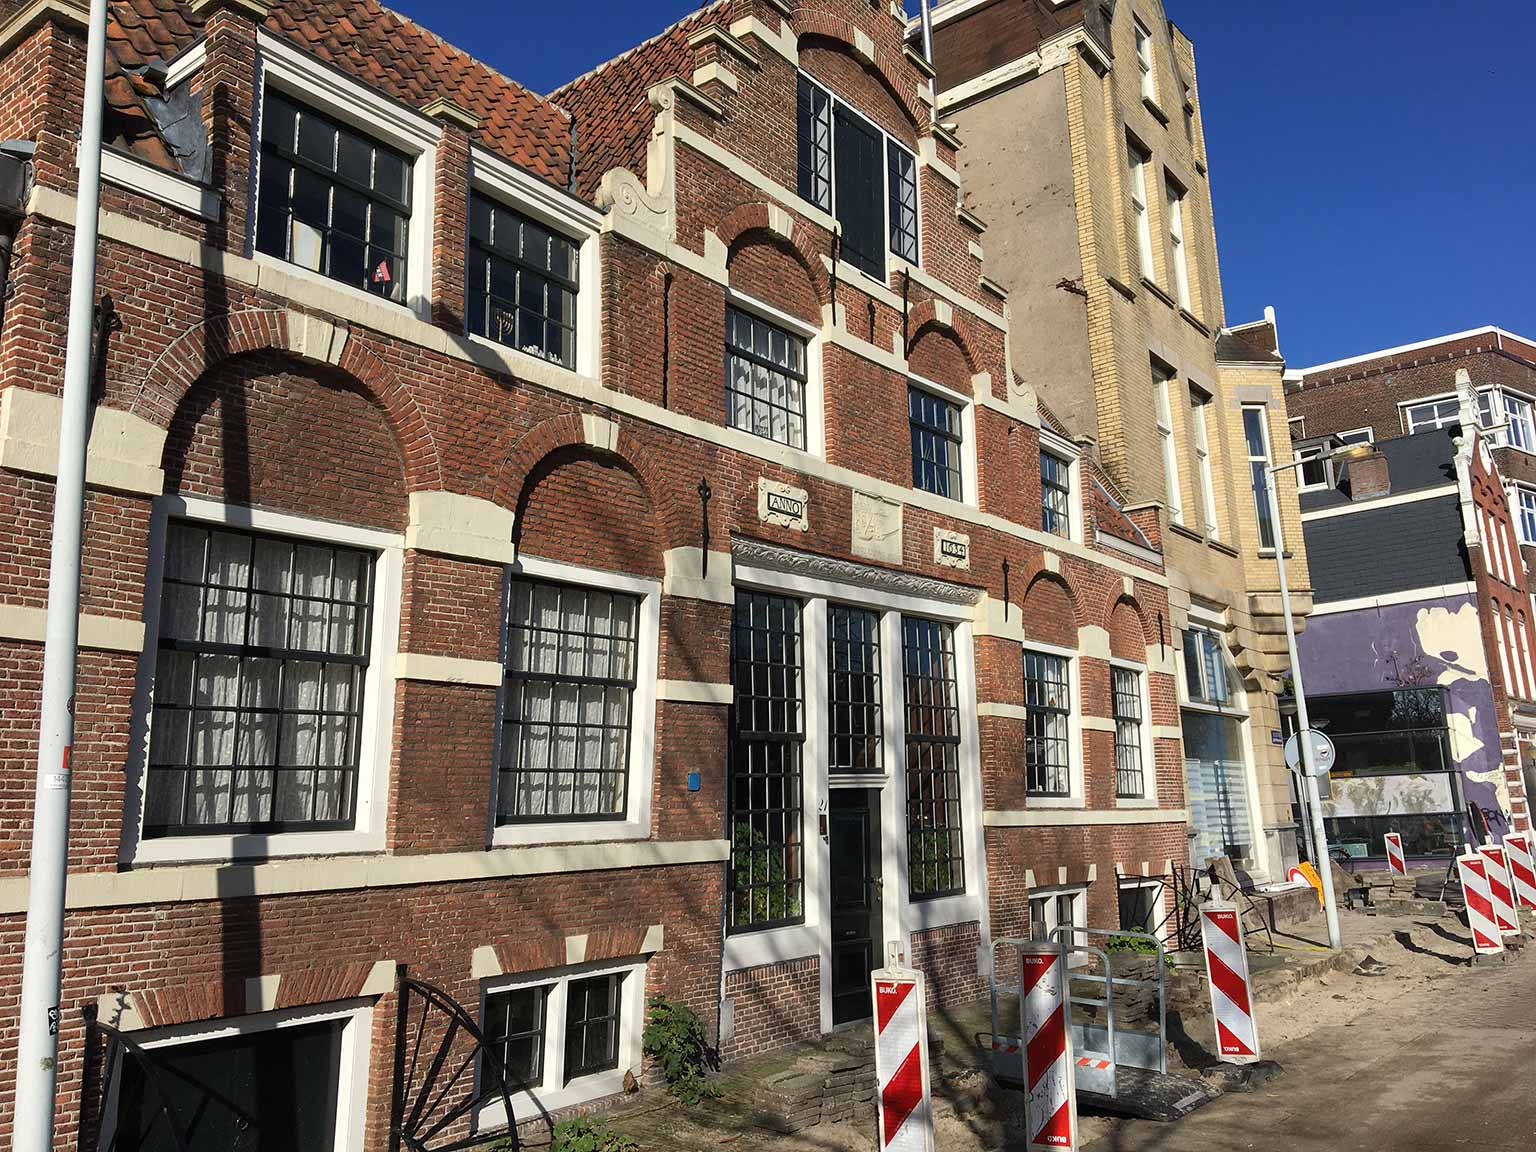 Aalsmeerder Veerhuis, Sloterkade 21-22, Amsterdam, February 2022